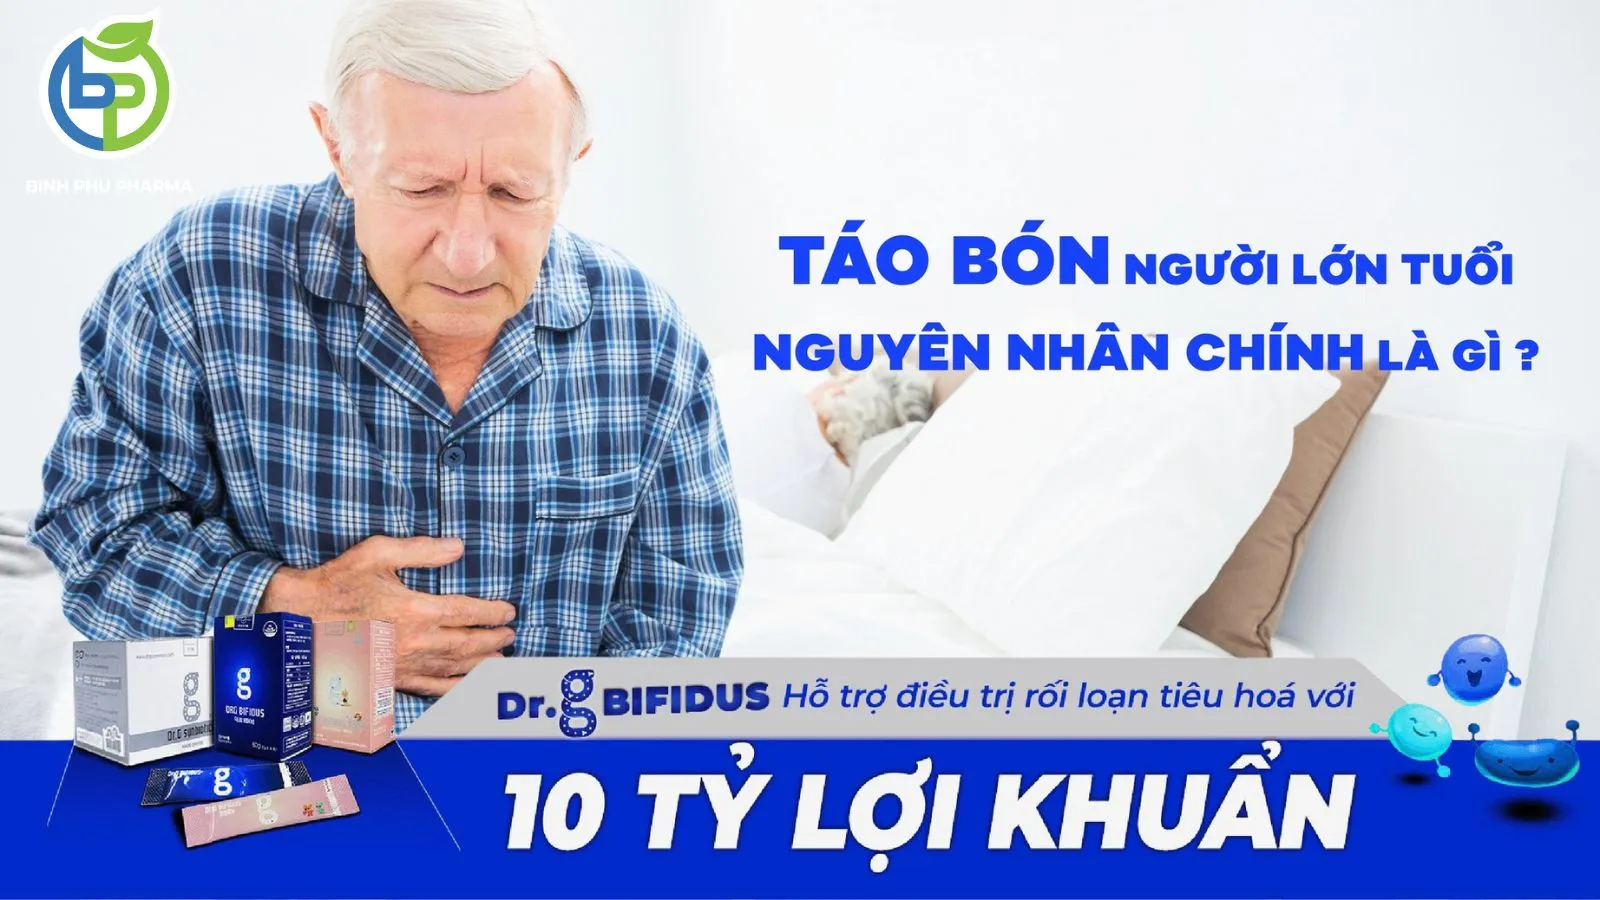 Feature image for post: KHÔNG CÒN NỖI LO TÁO BÓN Ở NGƯỜI LỚN TUỔI CÙNG MEN VI SINH DR.G